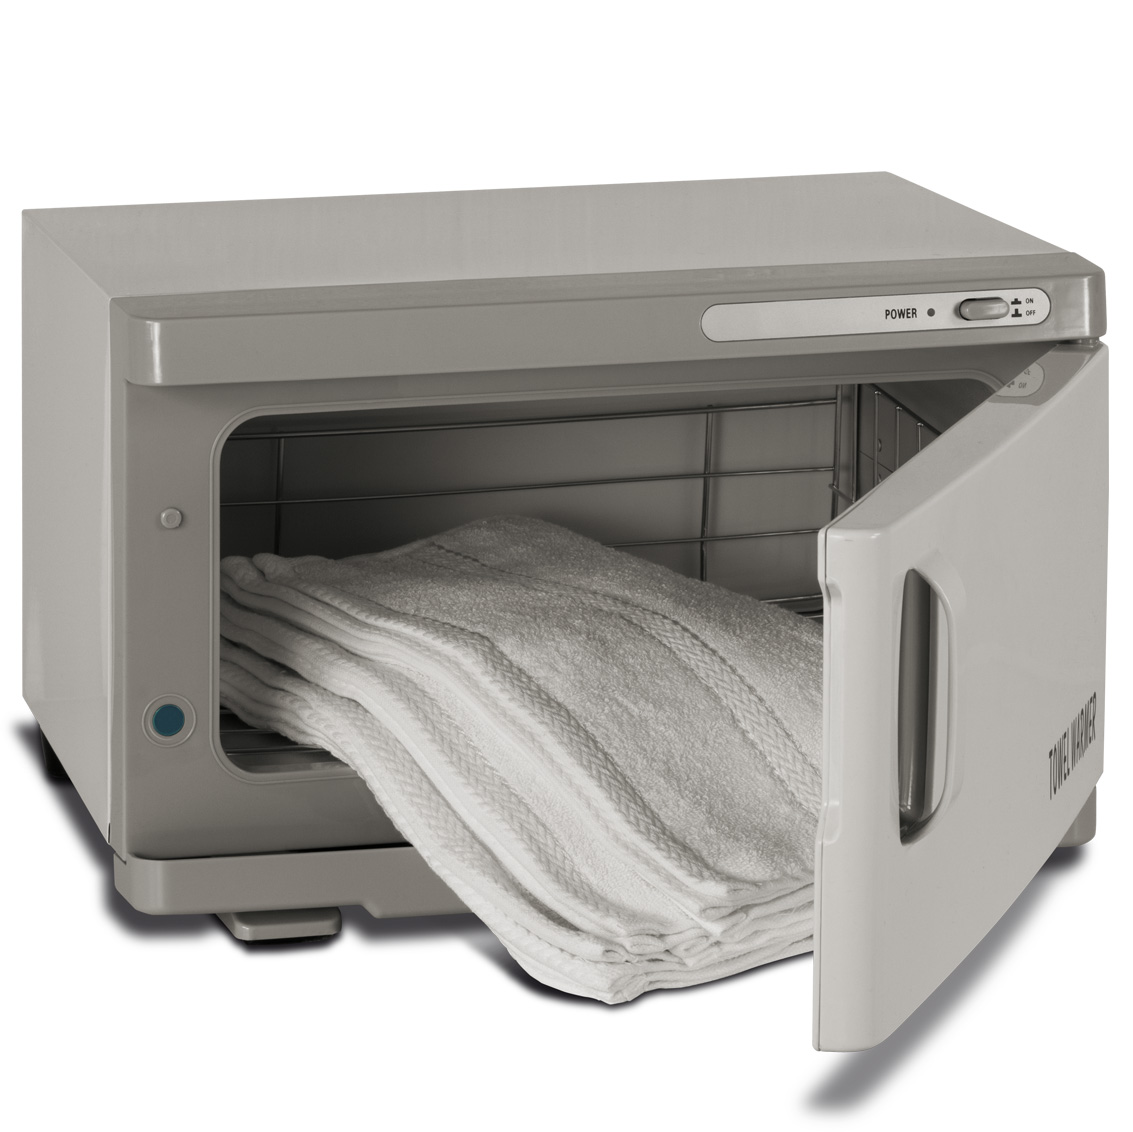 Scaldasalviette elettrico per estetica professionale Towel Warmer